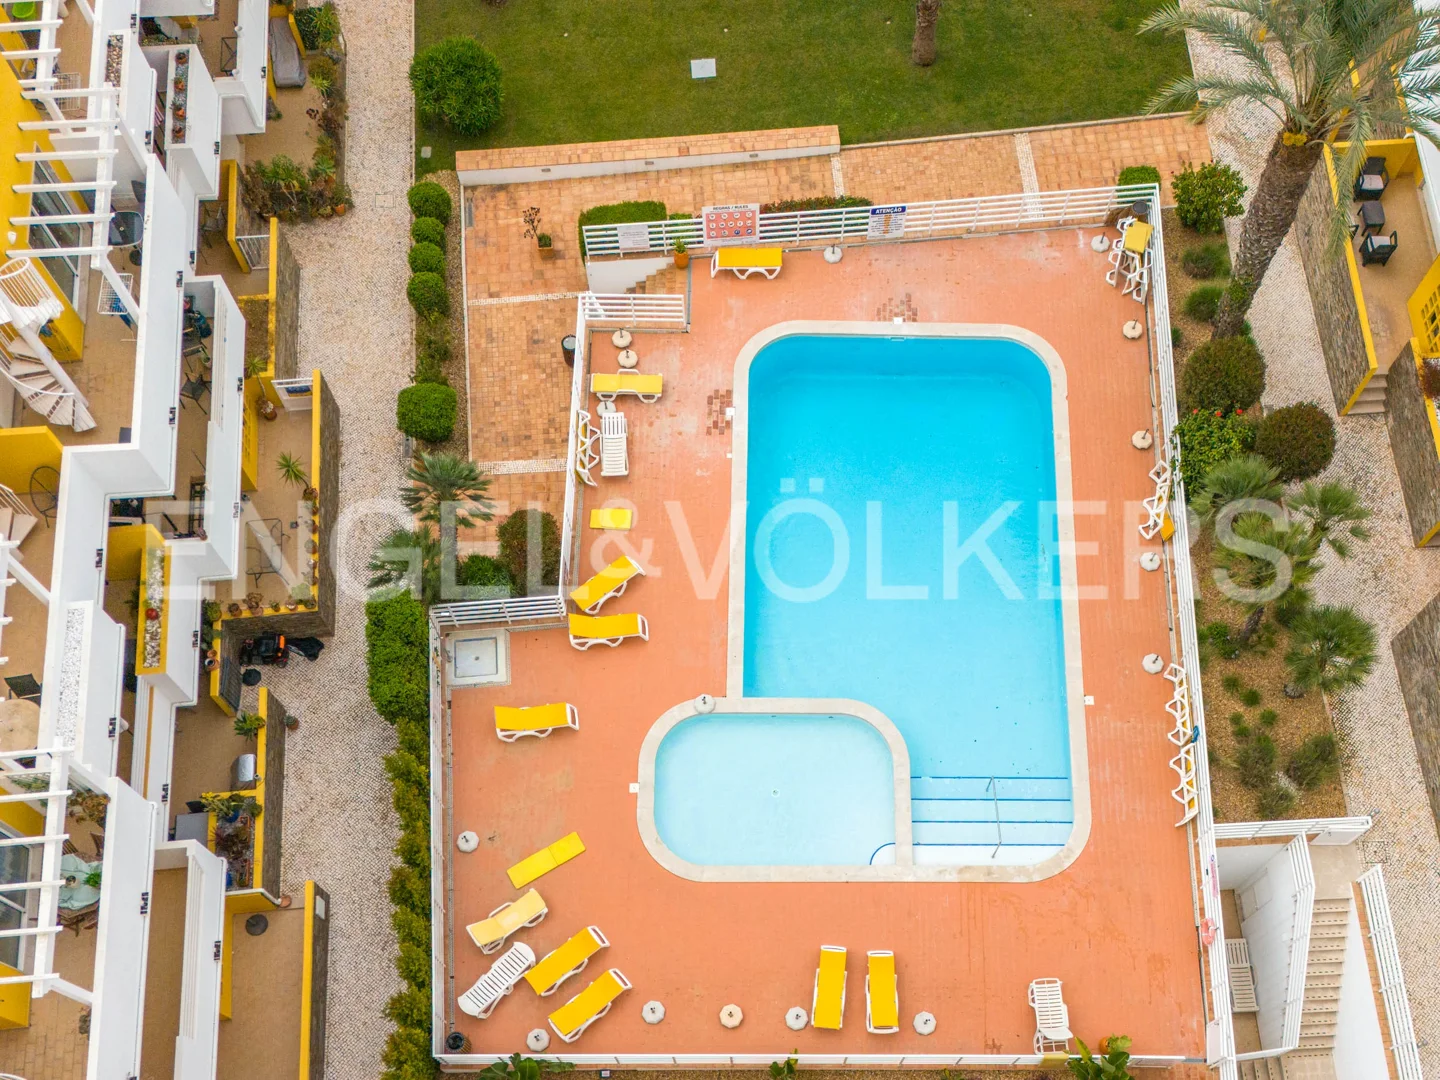 1-bed apartment with pool in Conceição de Tavira